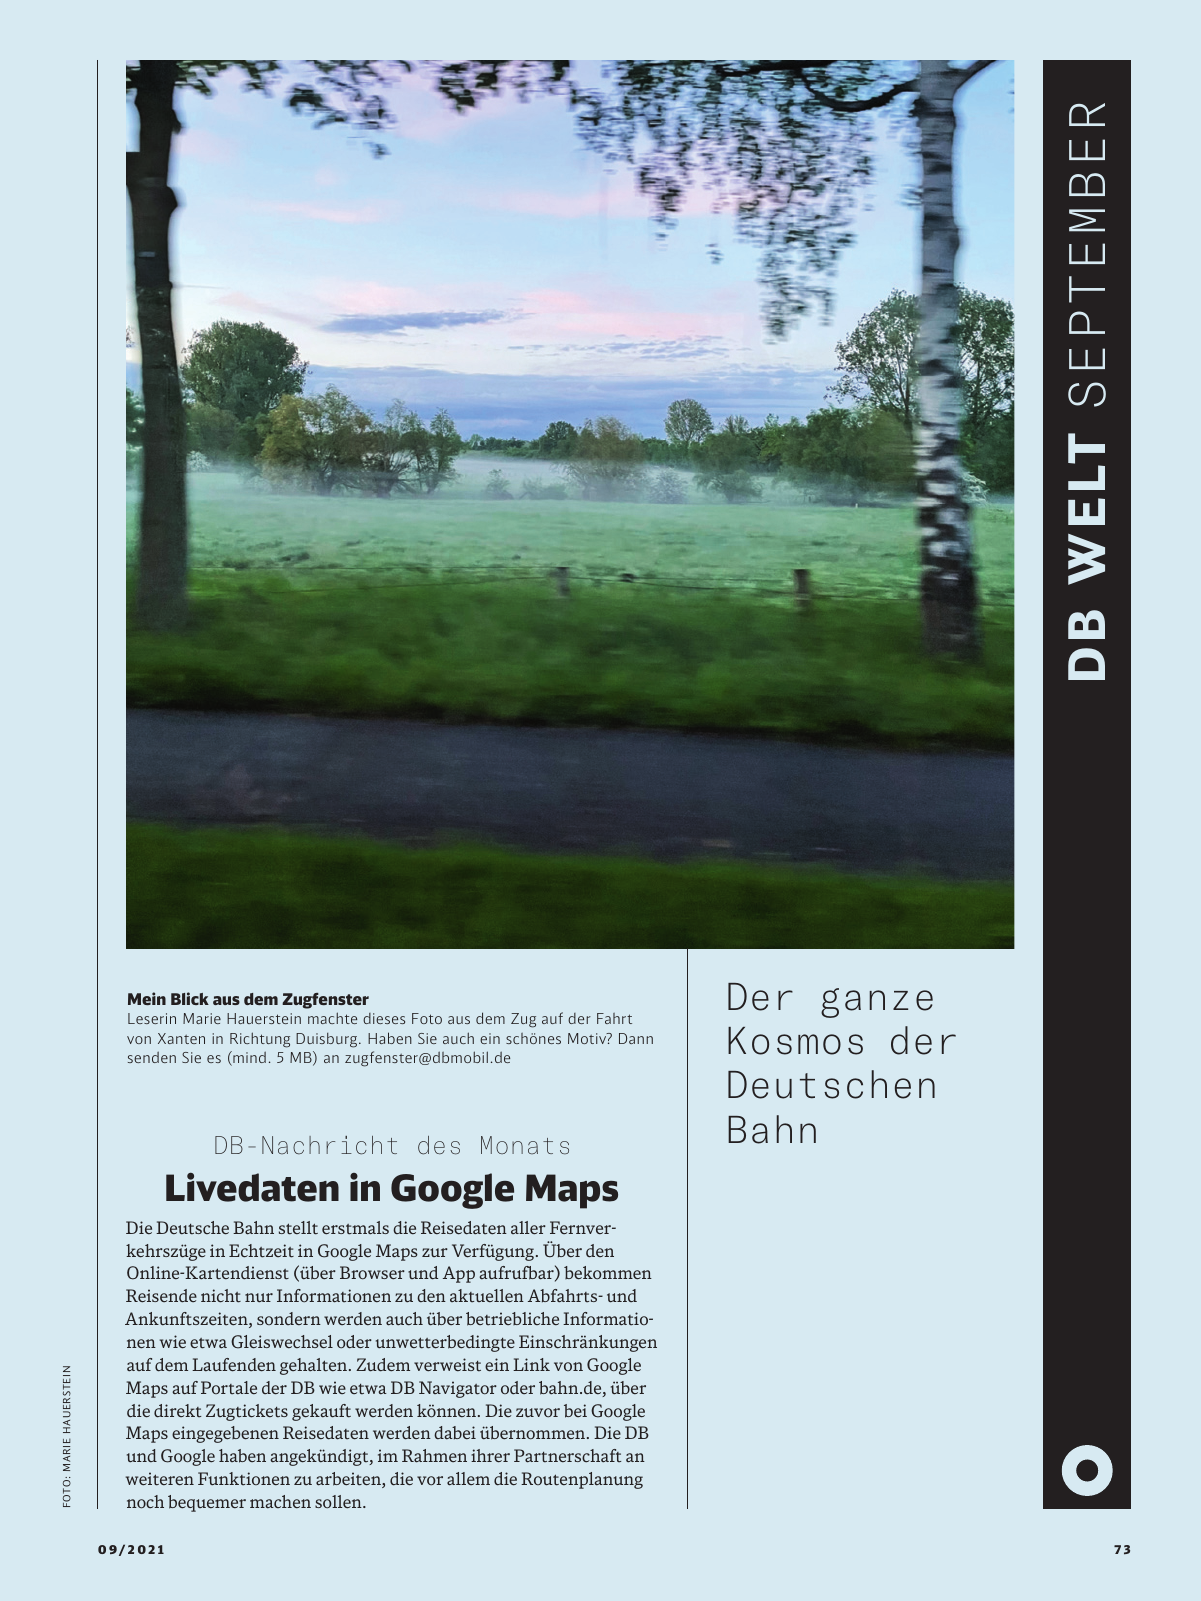 Vorschau DB mobil 09-2021 - Neu Seite 73